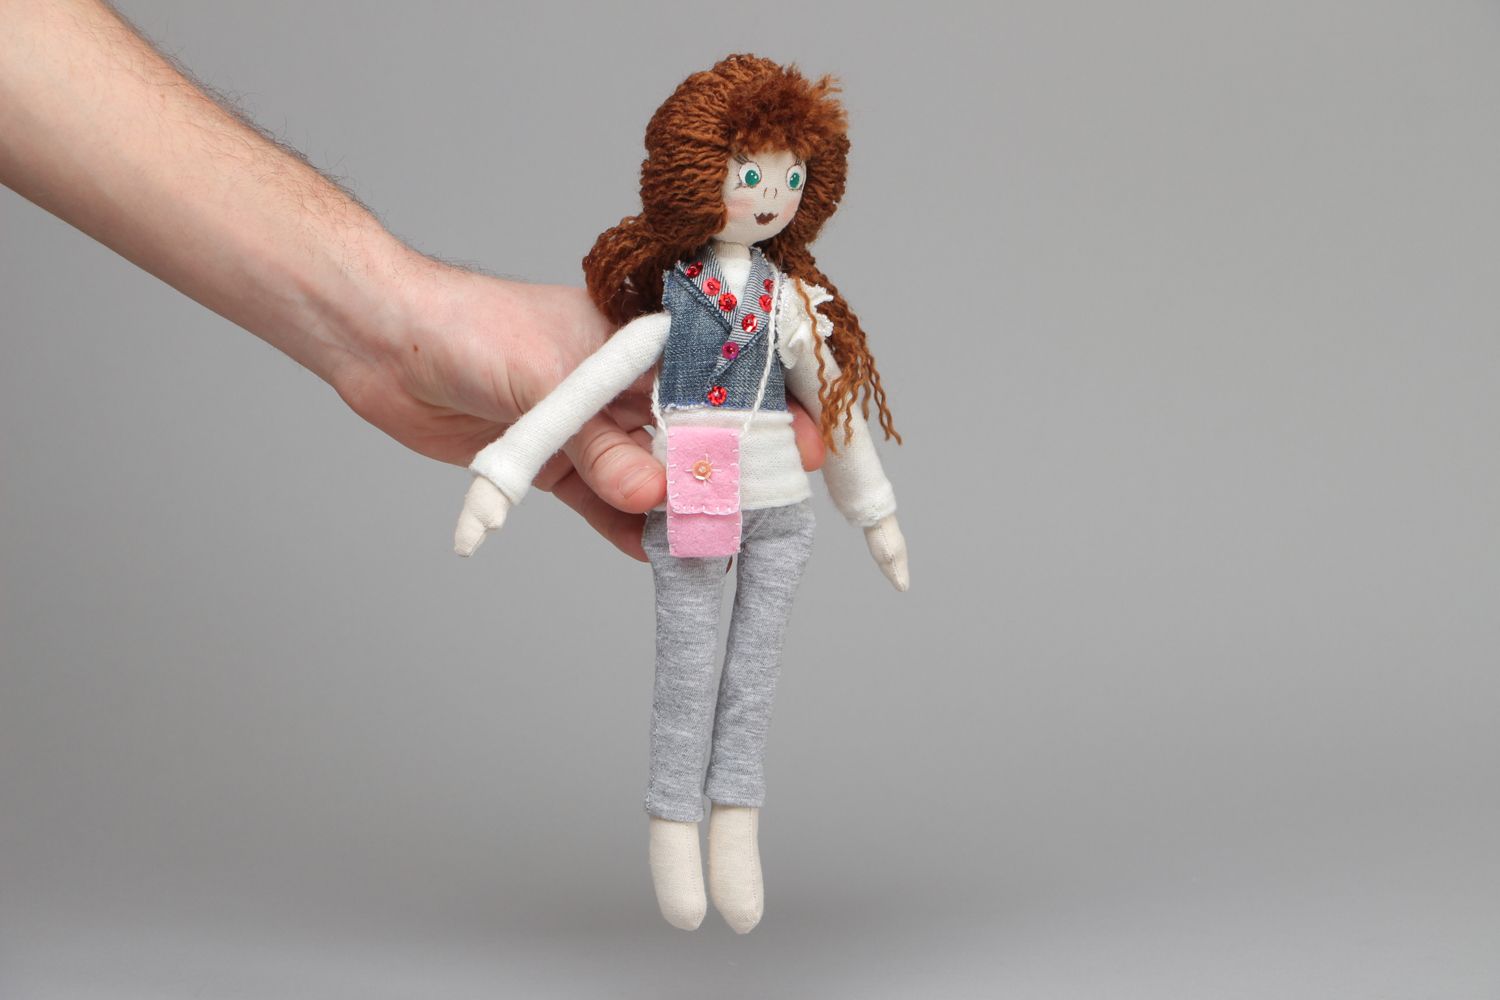 Textil Puppe aus Stoff mit lockigen Haaren Natalie foto 4